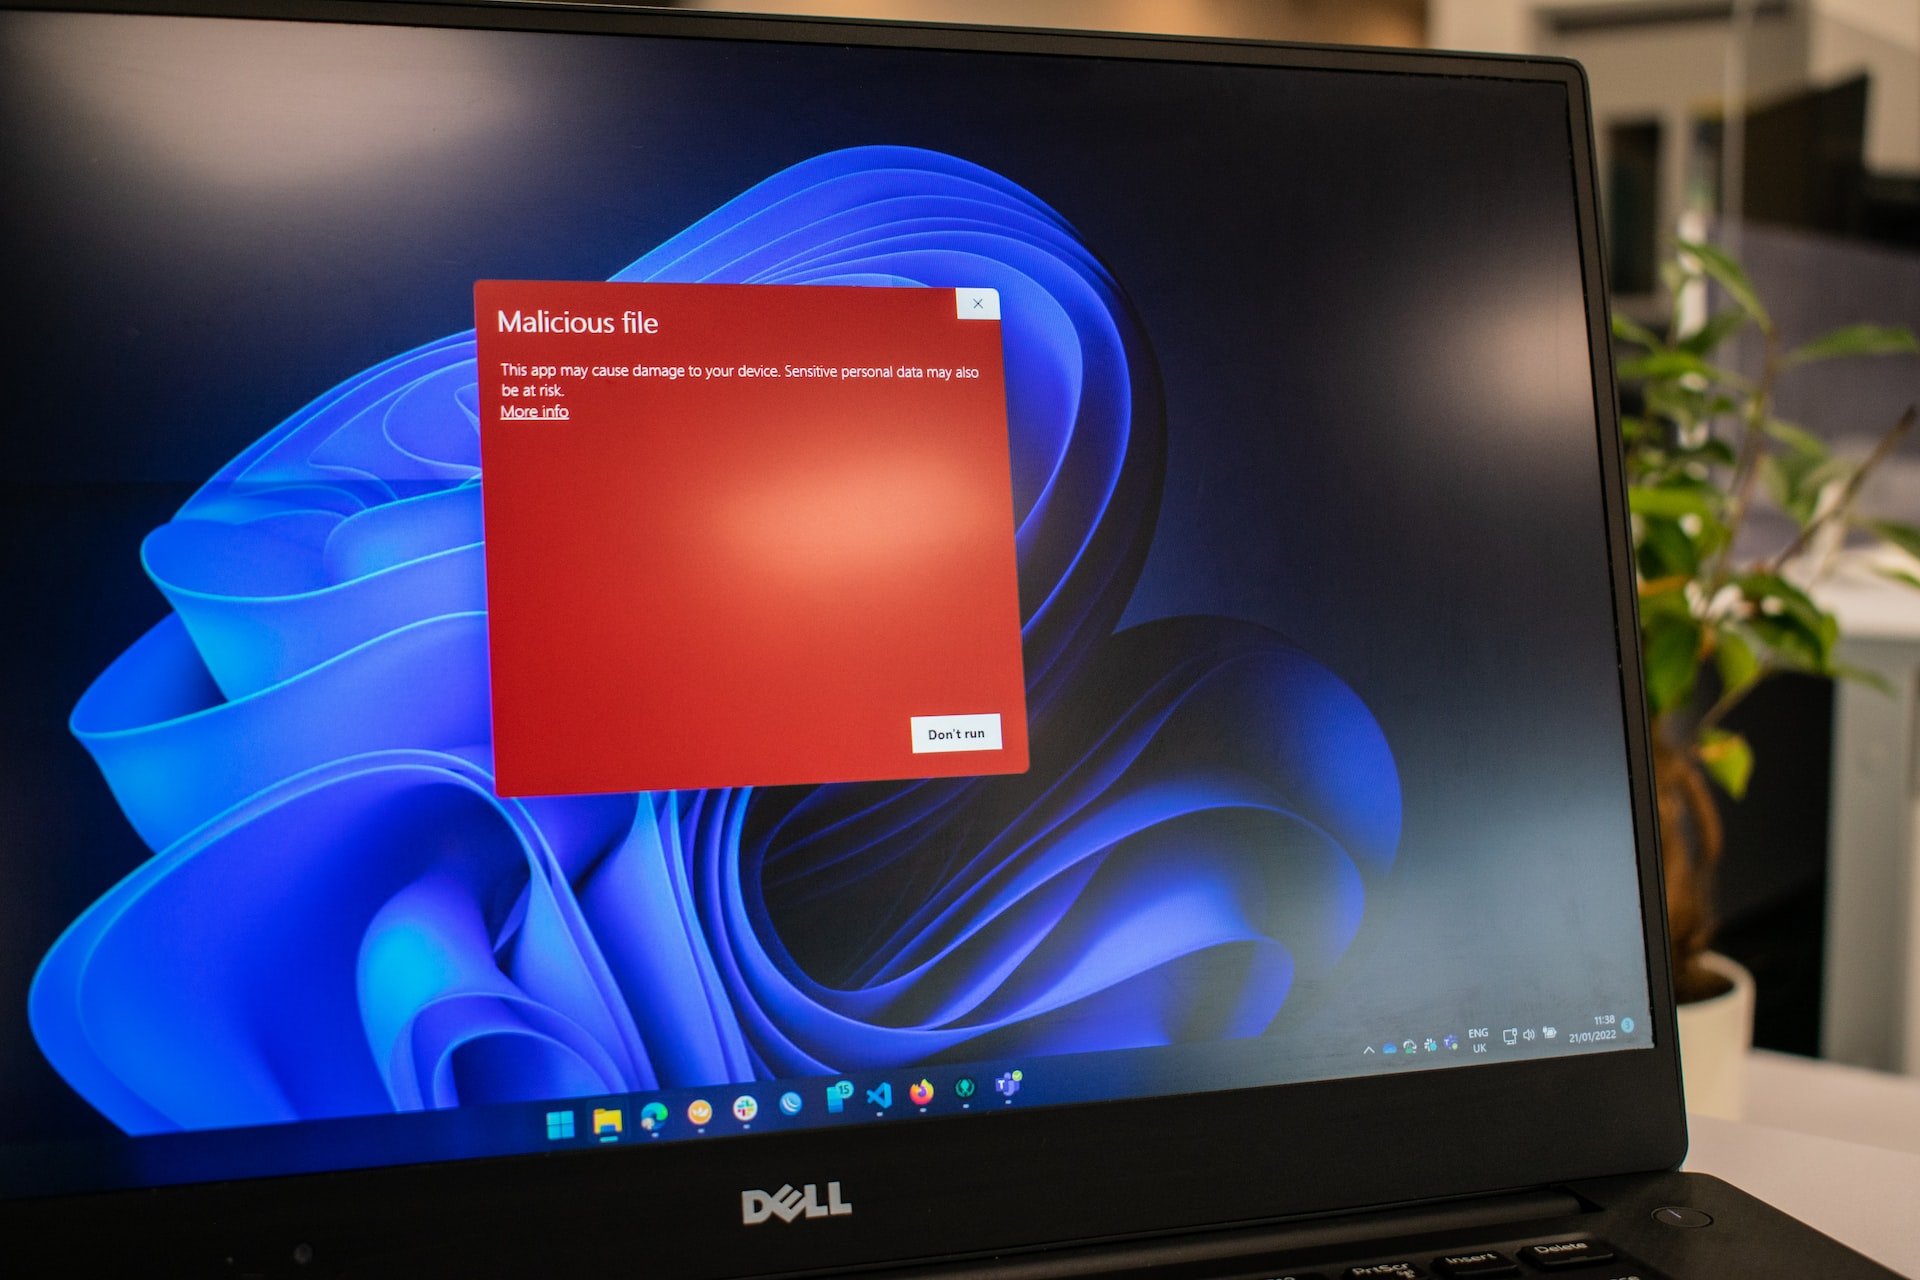 Monitor komputera z ostrzeżeniem o szkodliwym pliku wykrytym przez Windows Defender na ekranie, z widocznymi ikonami aplikacji na pasku zadań.